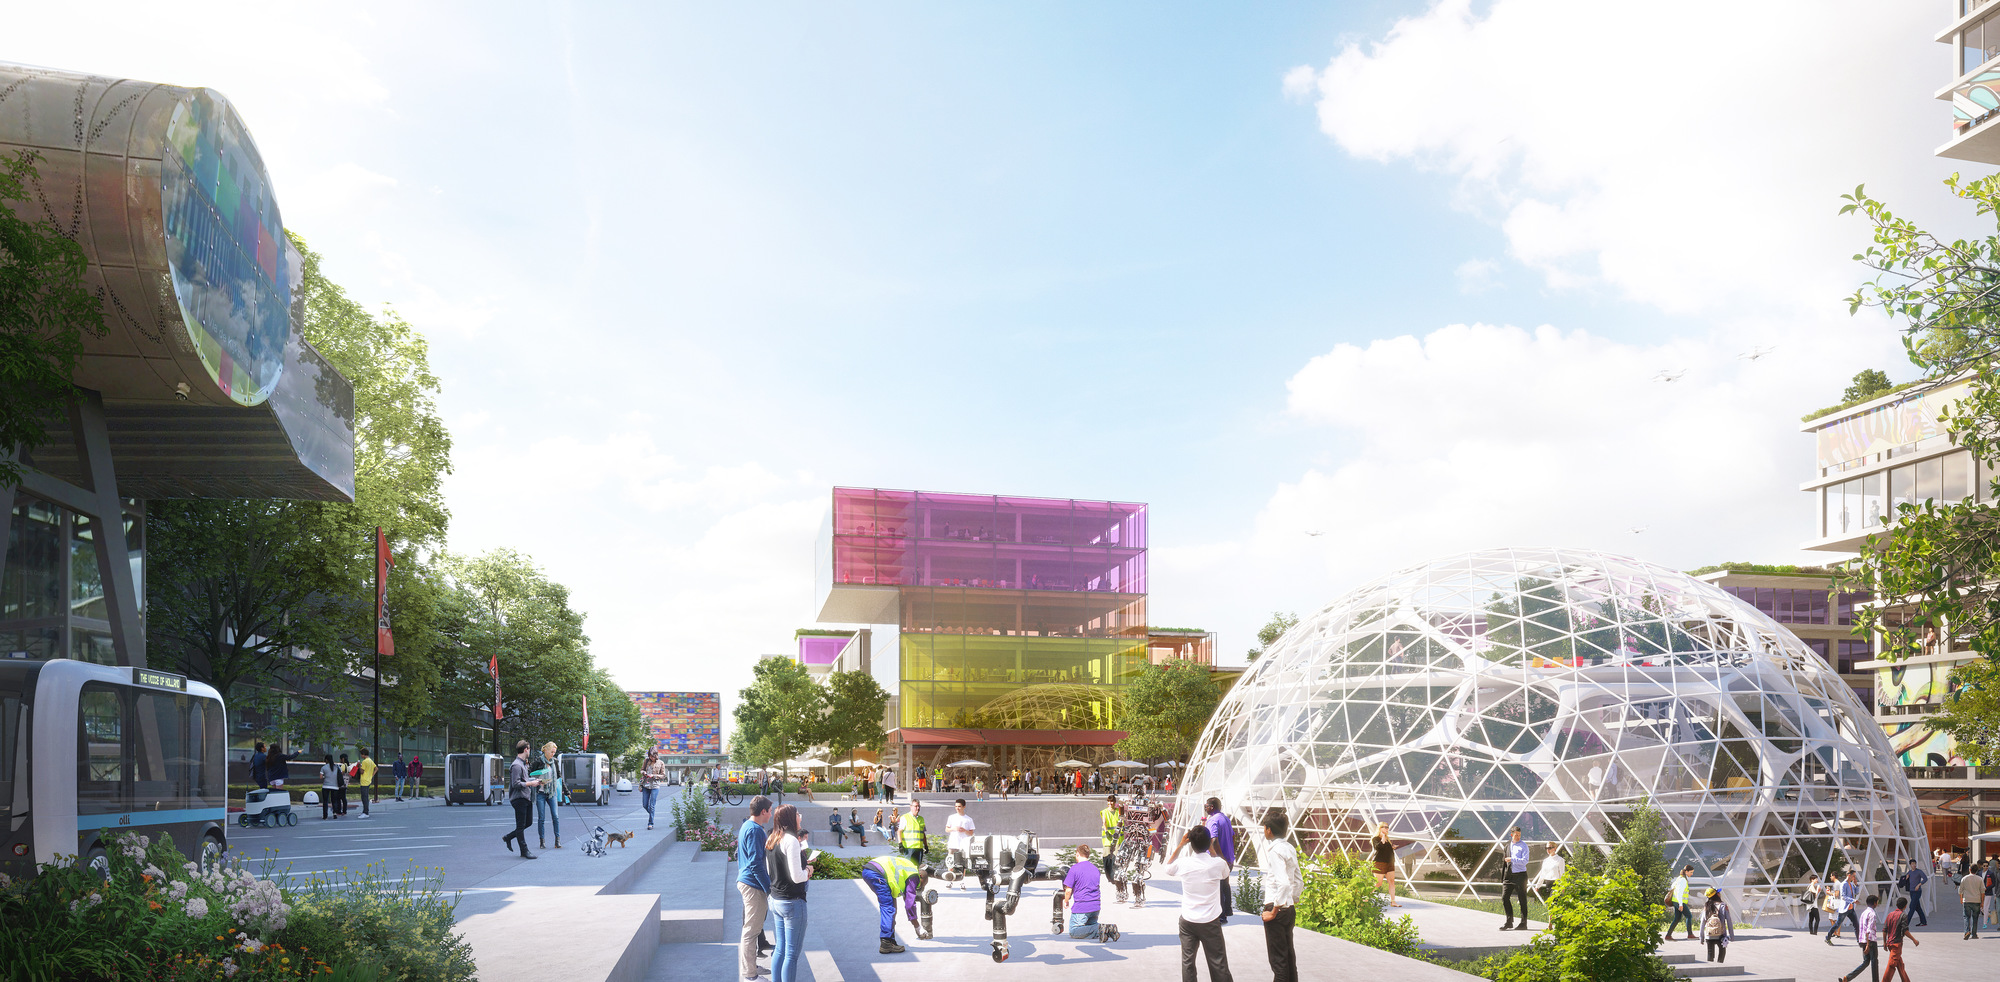 Hilversum Media Park 2030 Vision Launched